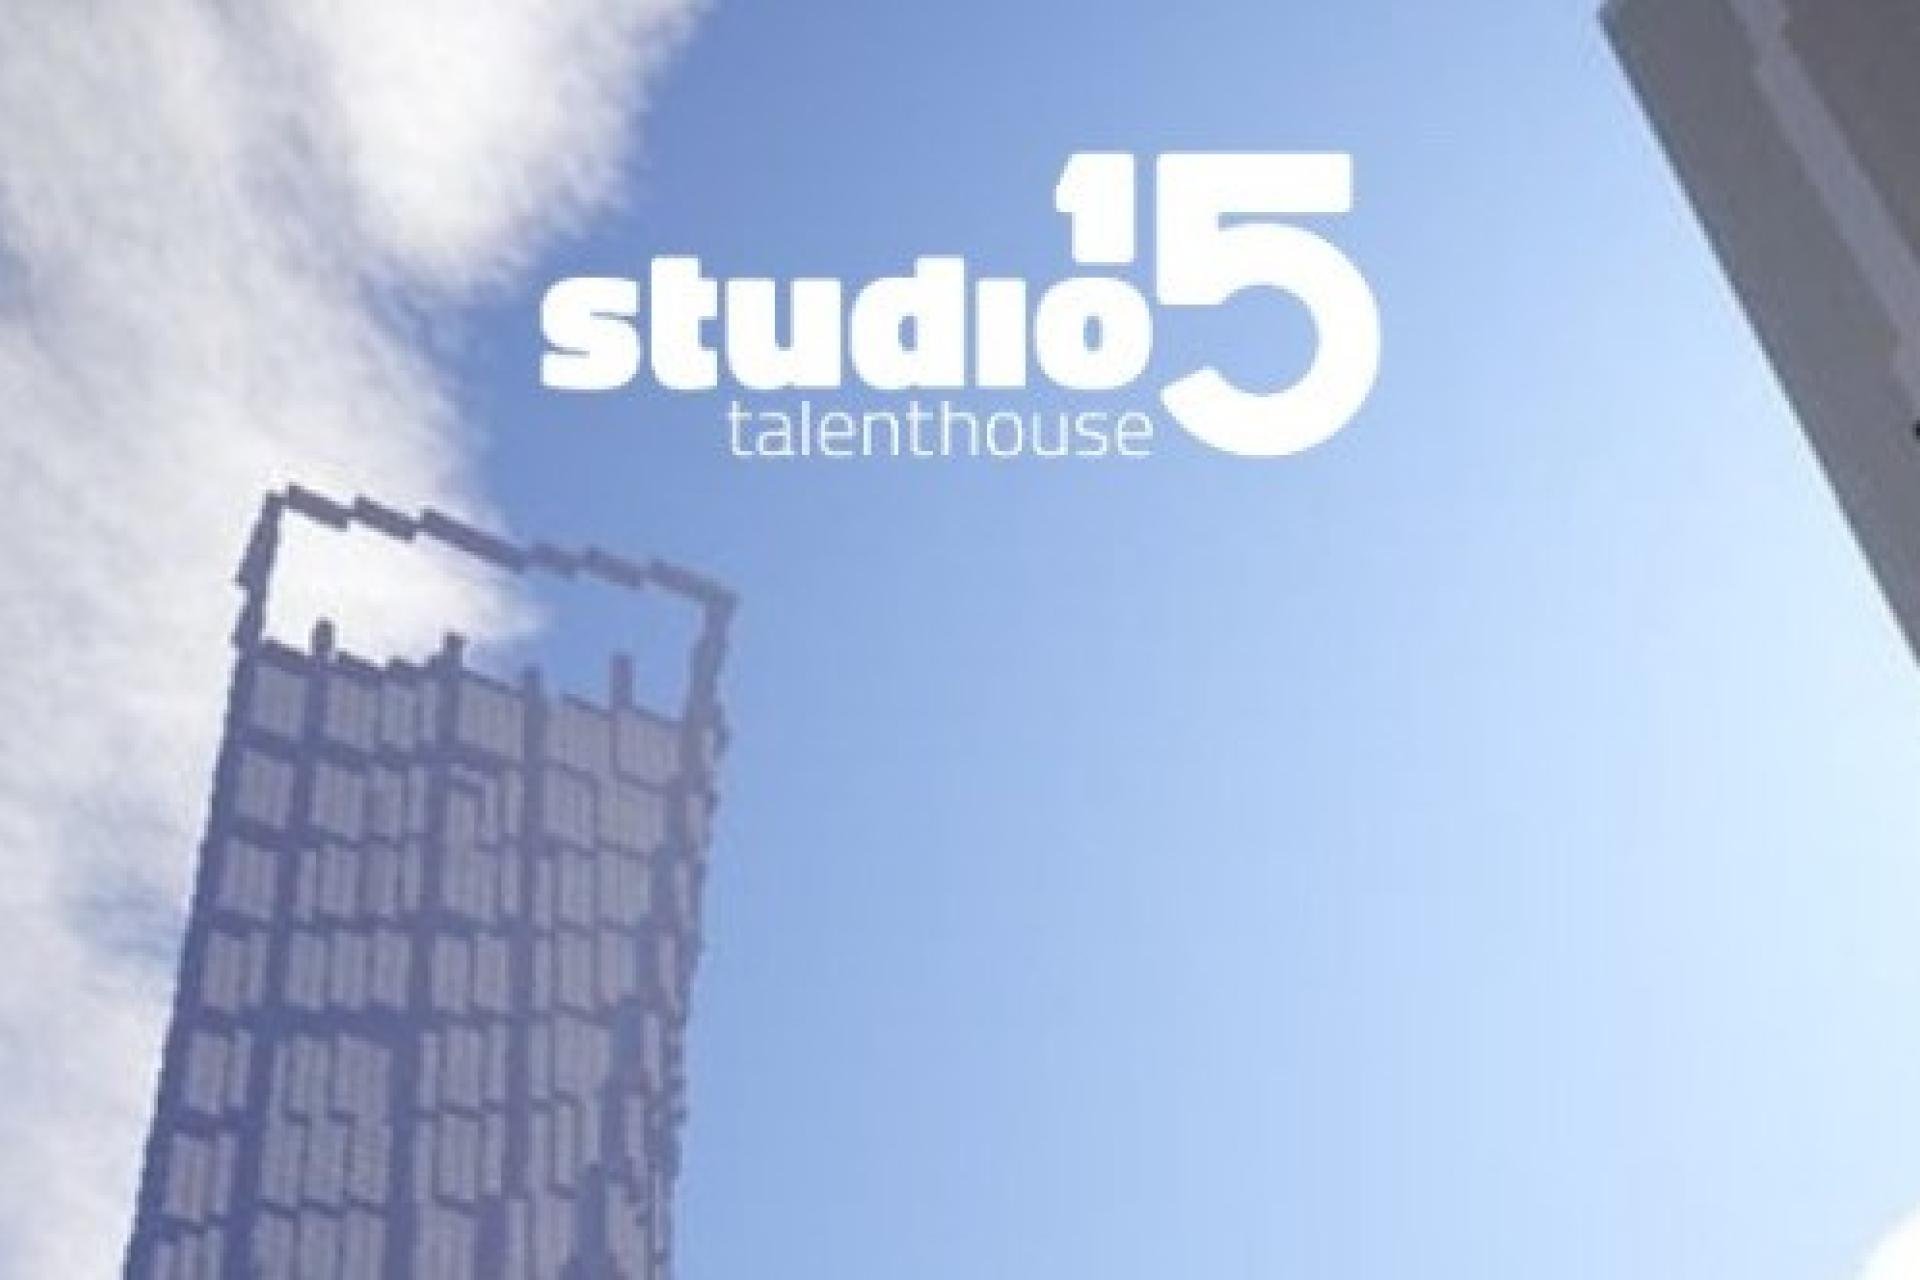 Studio15